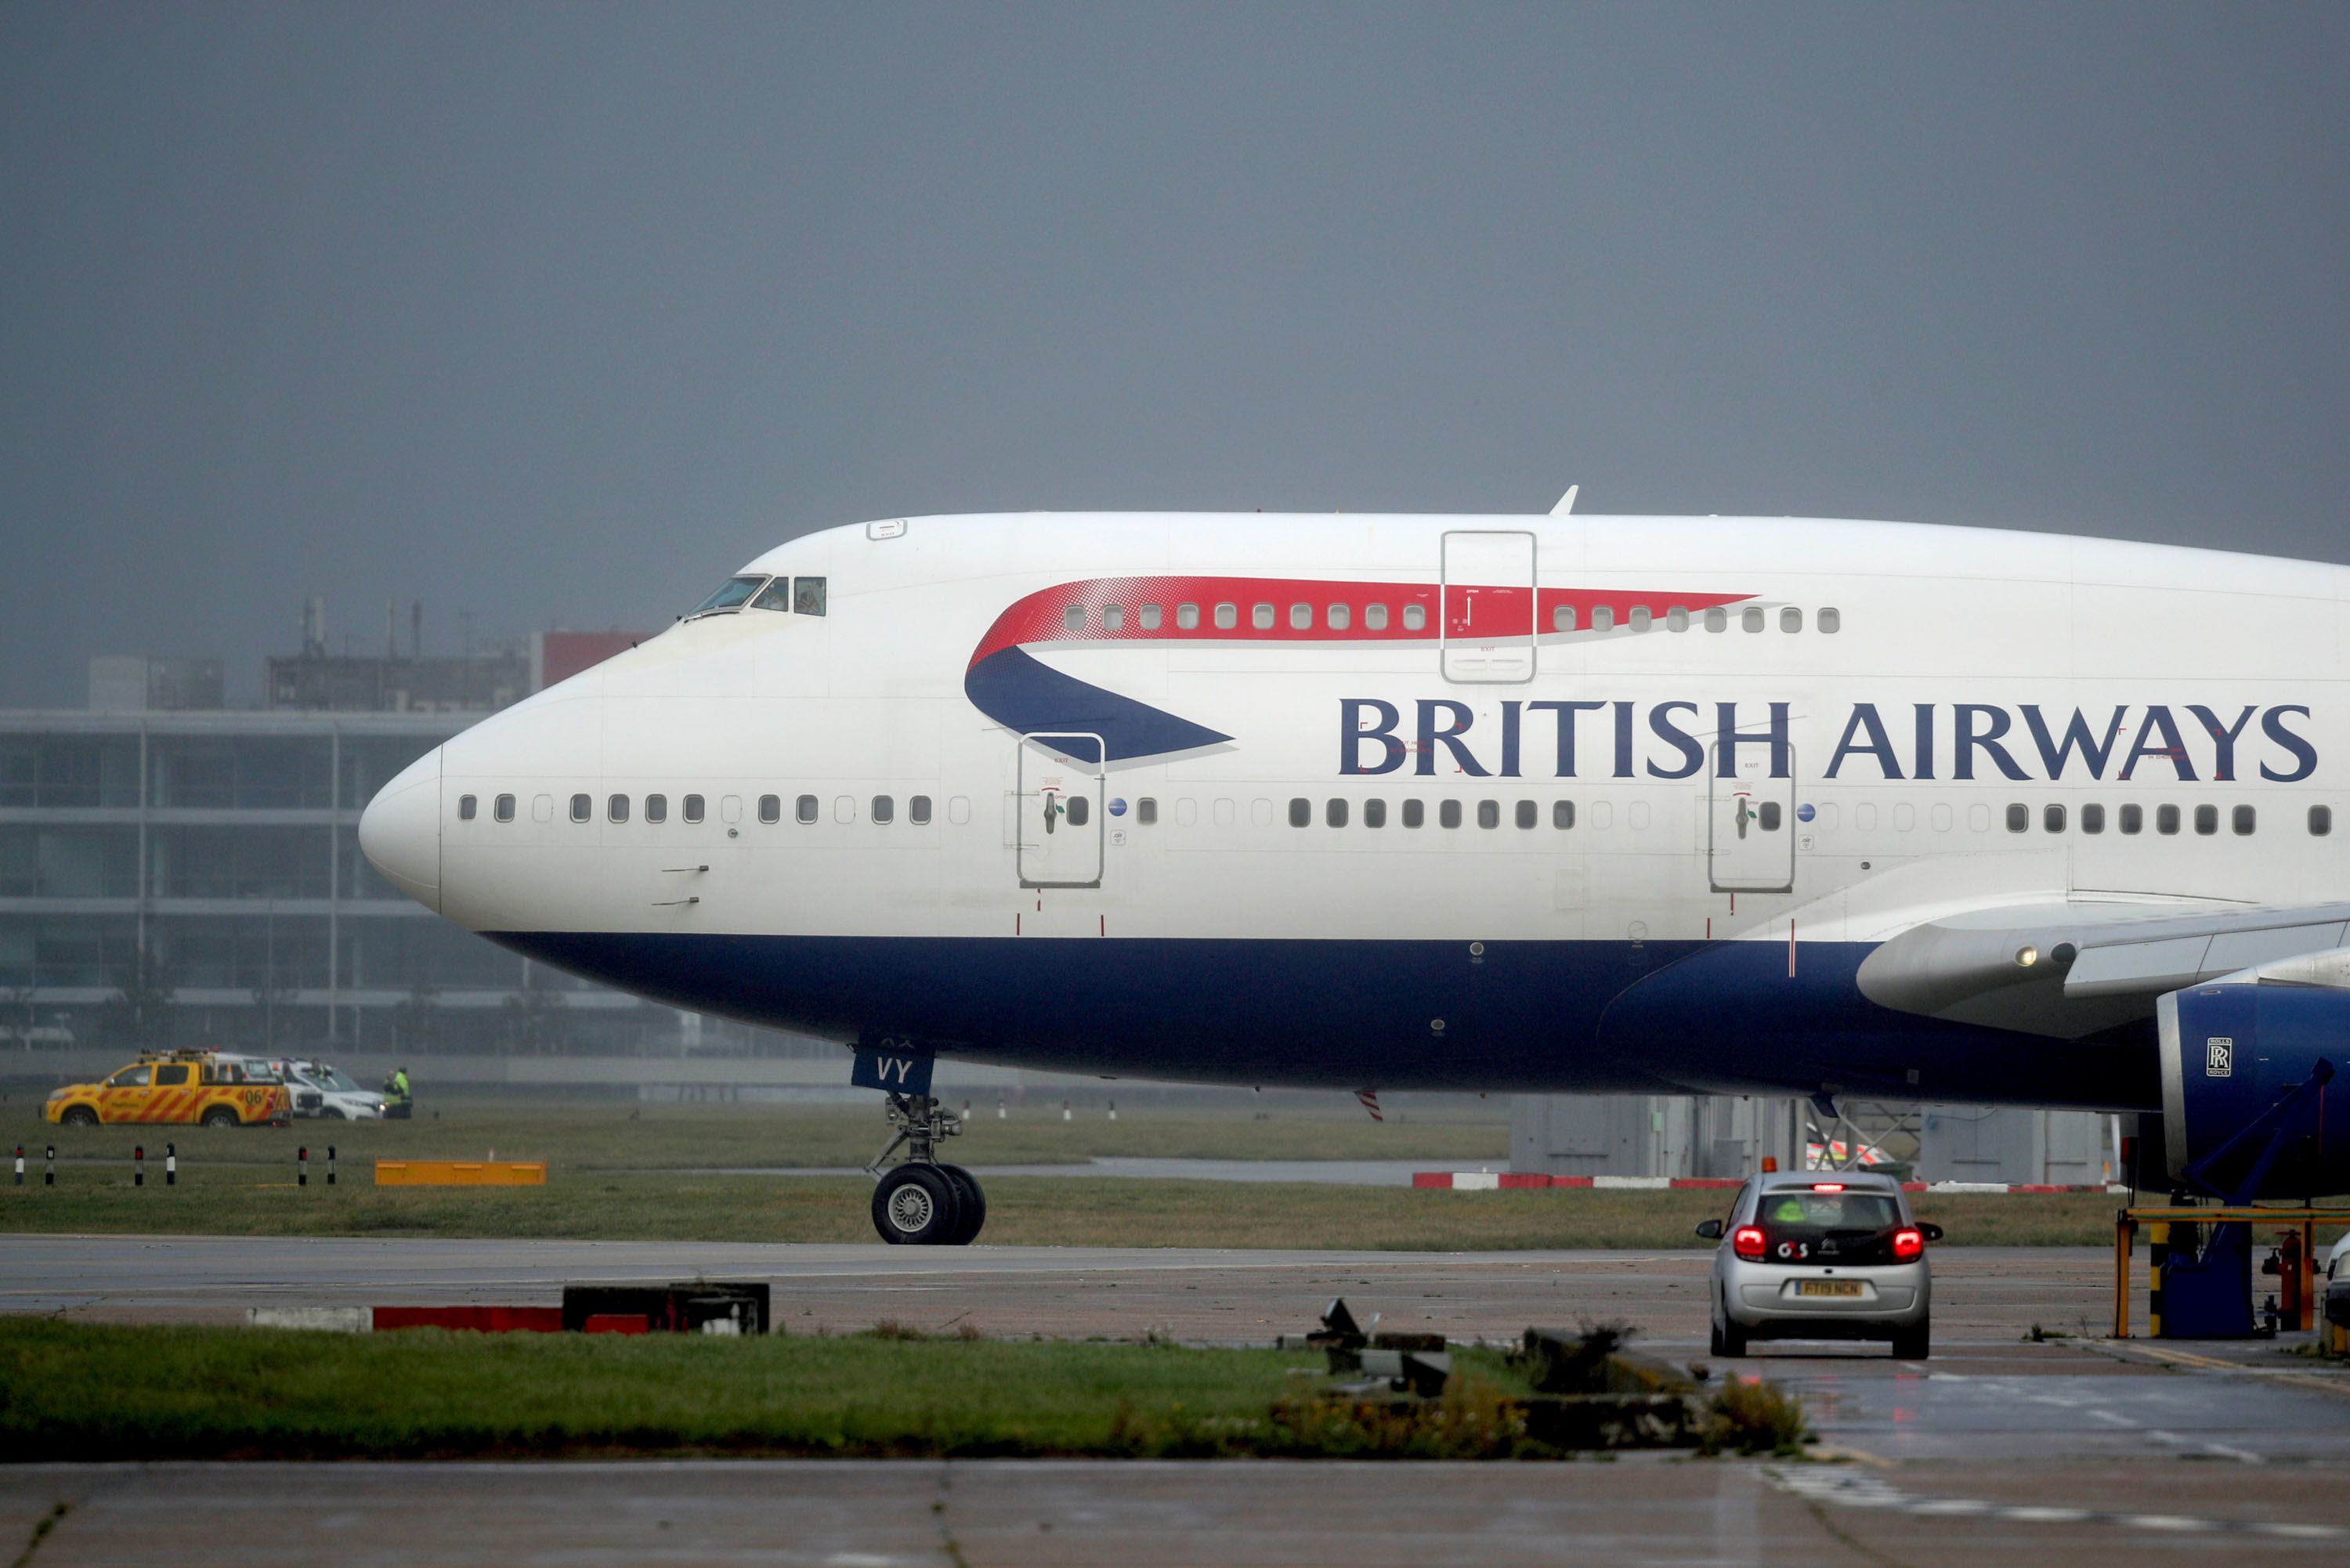 British Airways retires its final 747 airplane | CNN